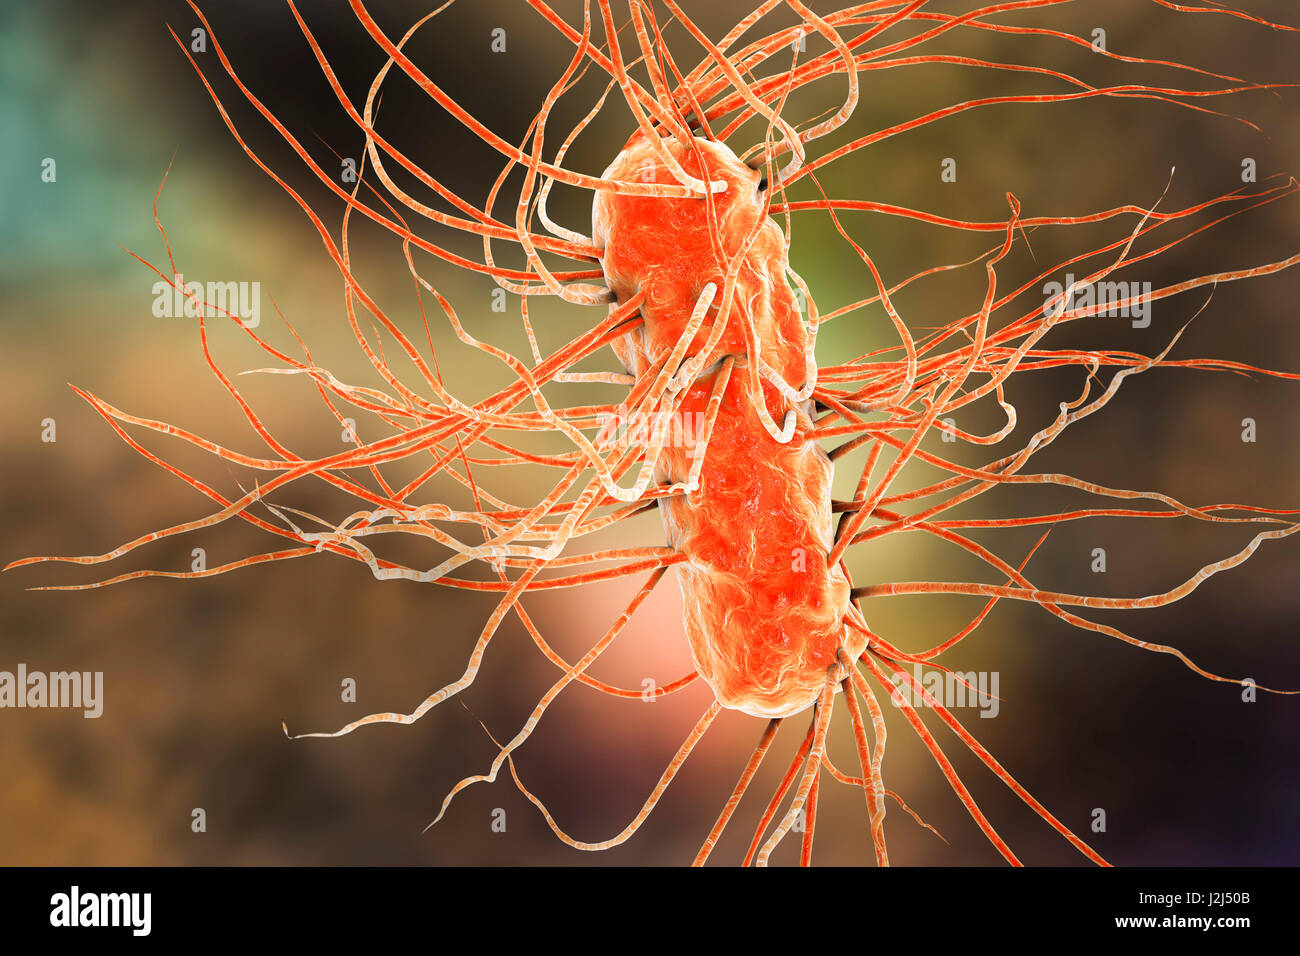 Batteri E. coli. Computer illustrazione di tre batteri Escherichia coli. E. coli è un tondino sagomato (batterio bacillus). La sua membrana cellulare è ricoperto di sottili filamenti chiamati pili delle fimbrie o. Capelli-come strutture chiamate flagelli nella parte posteriore di ciascun bacteriu Foto Stock